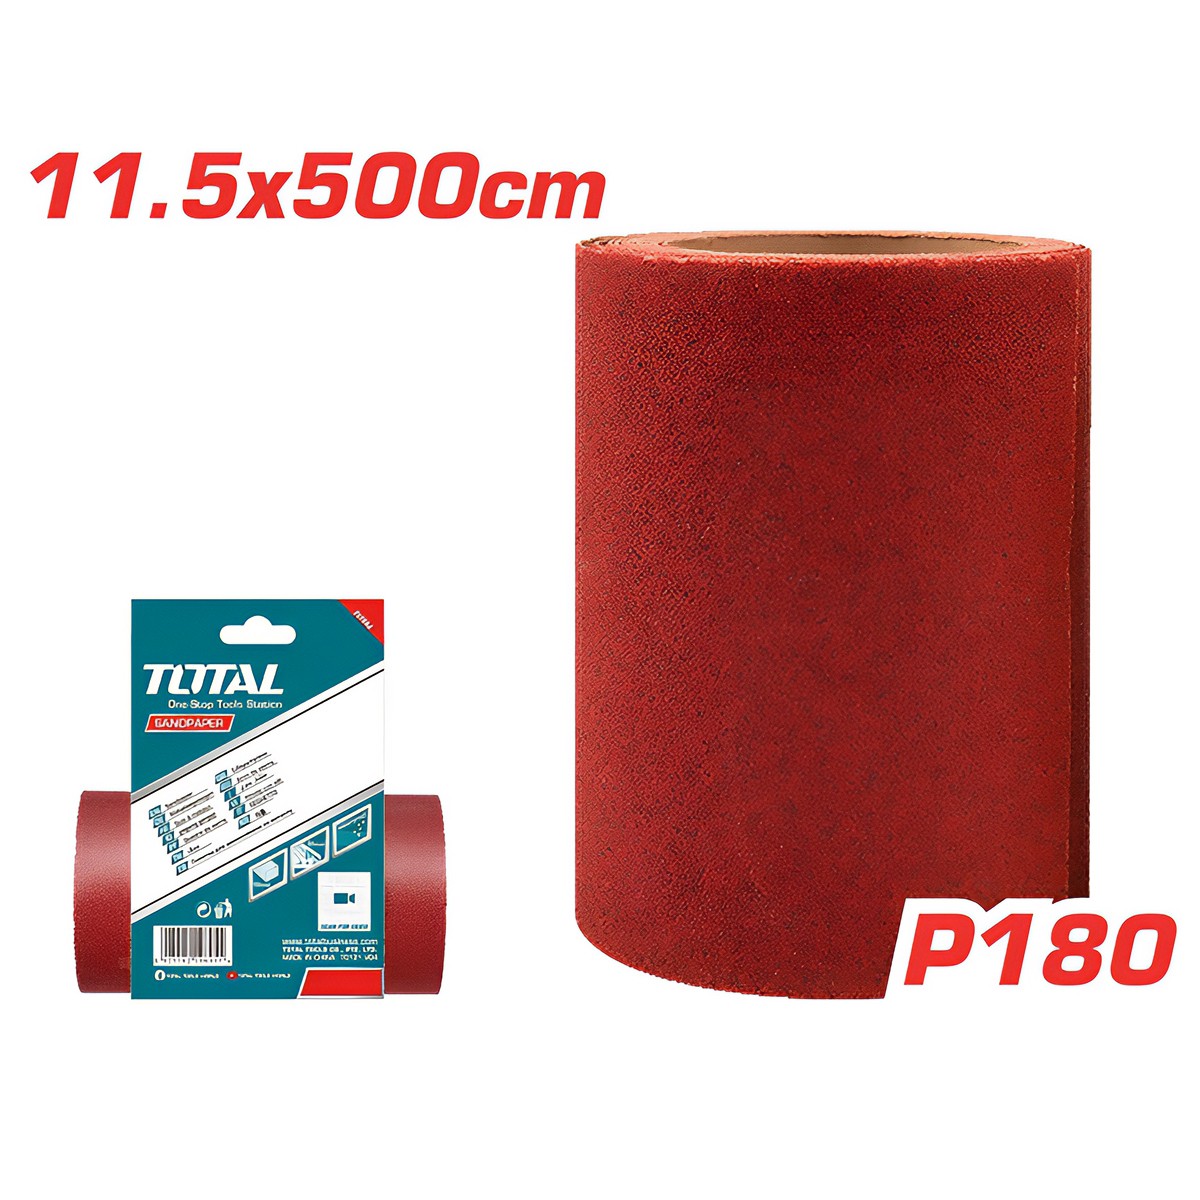 TOTAL RED SANDPAPER 11.5CM X 500CM P180